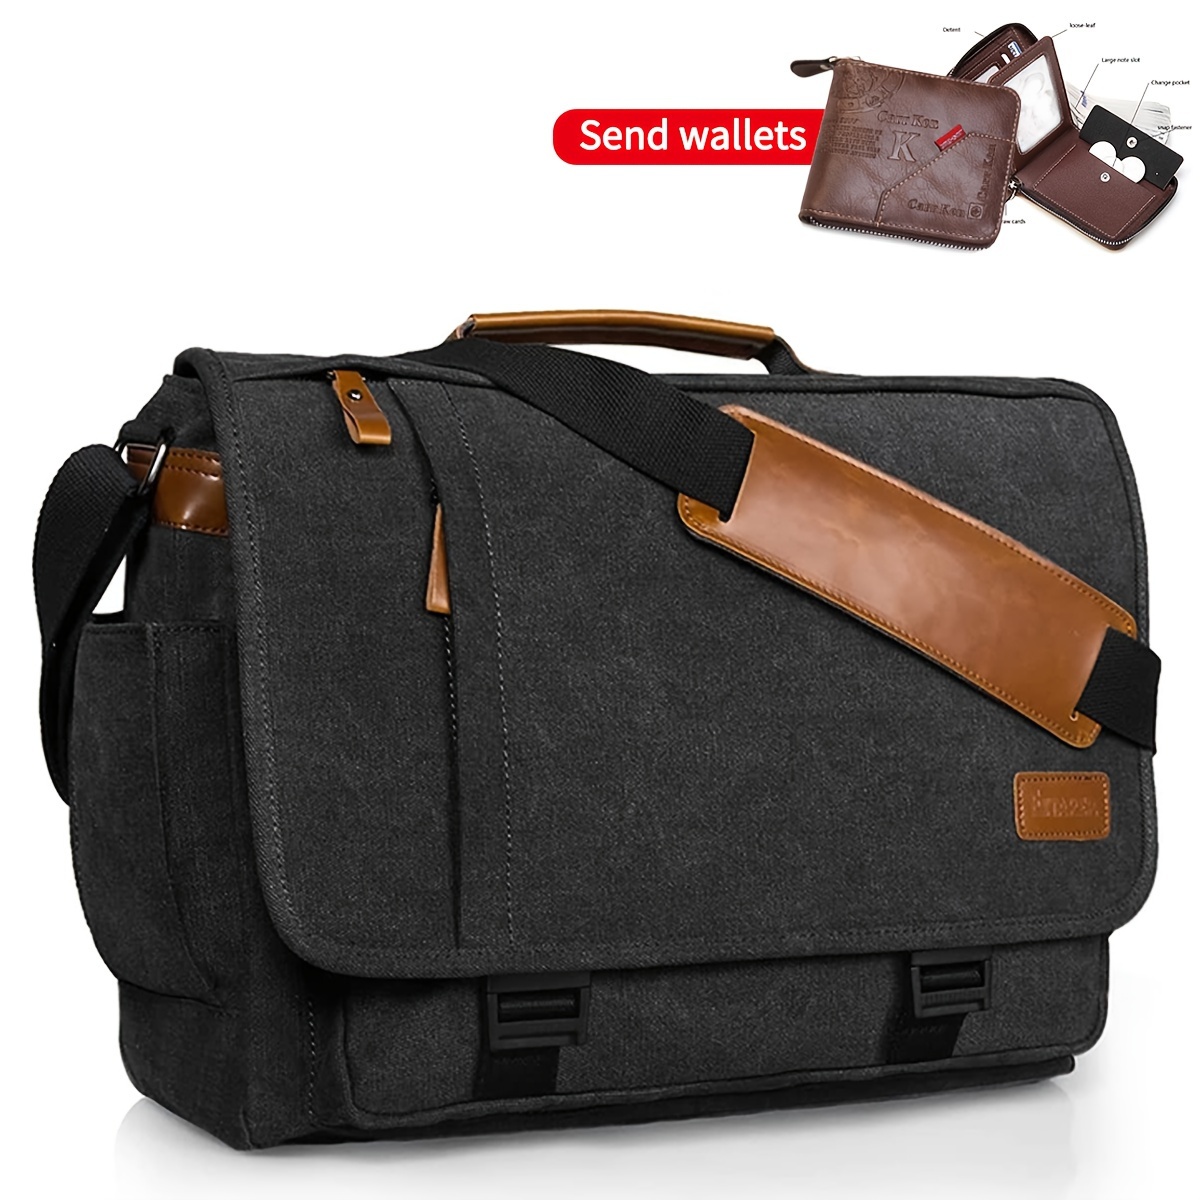 BusinessComputer Messenger Bag, Canvas Laptop Shoulder Bag For Travel Work,  Portable Unisex Office Bag